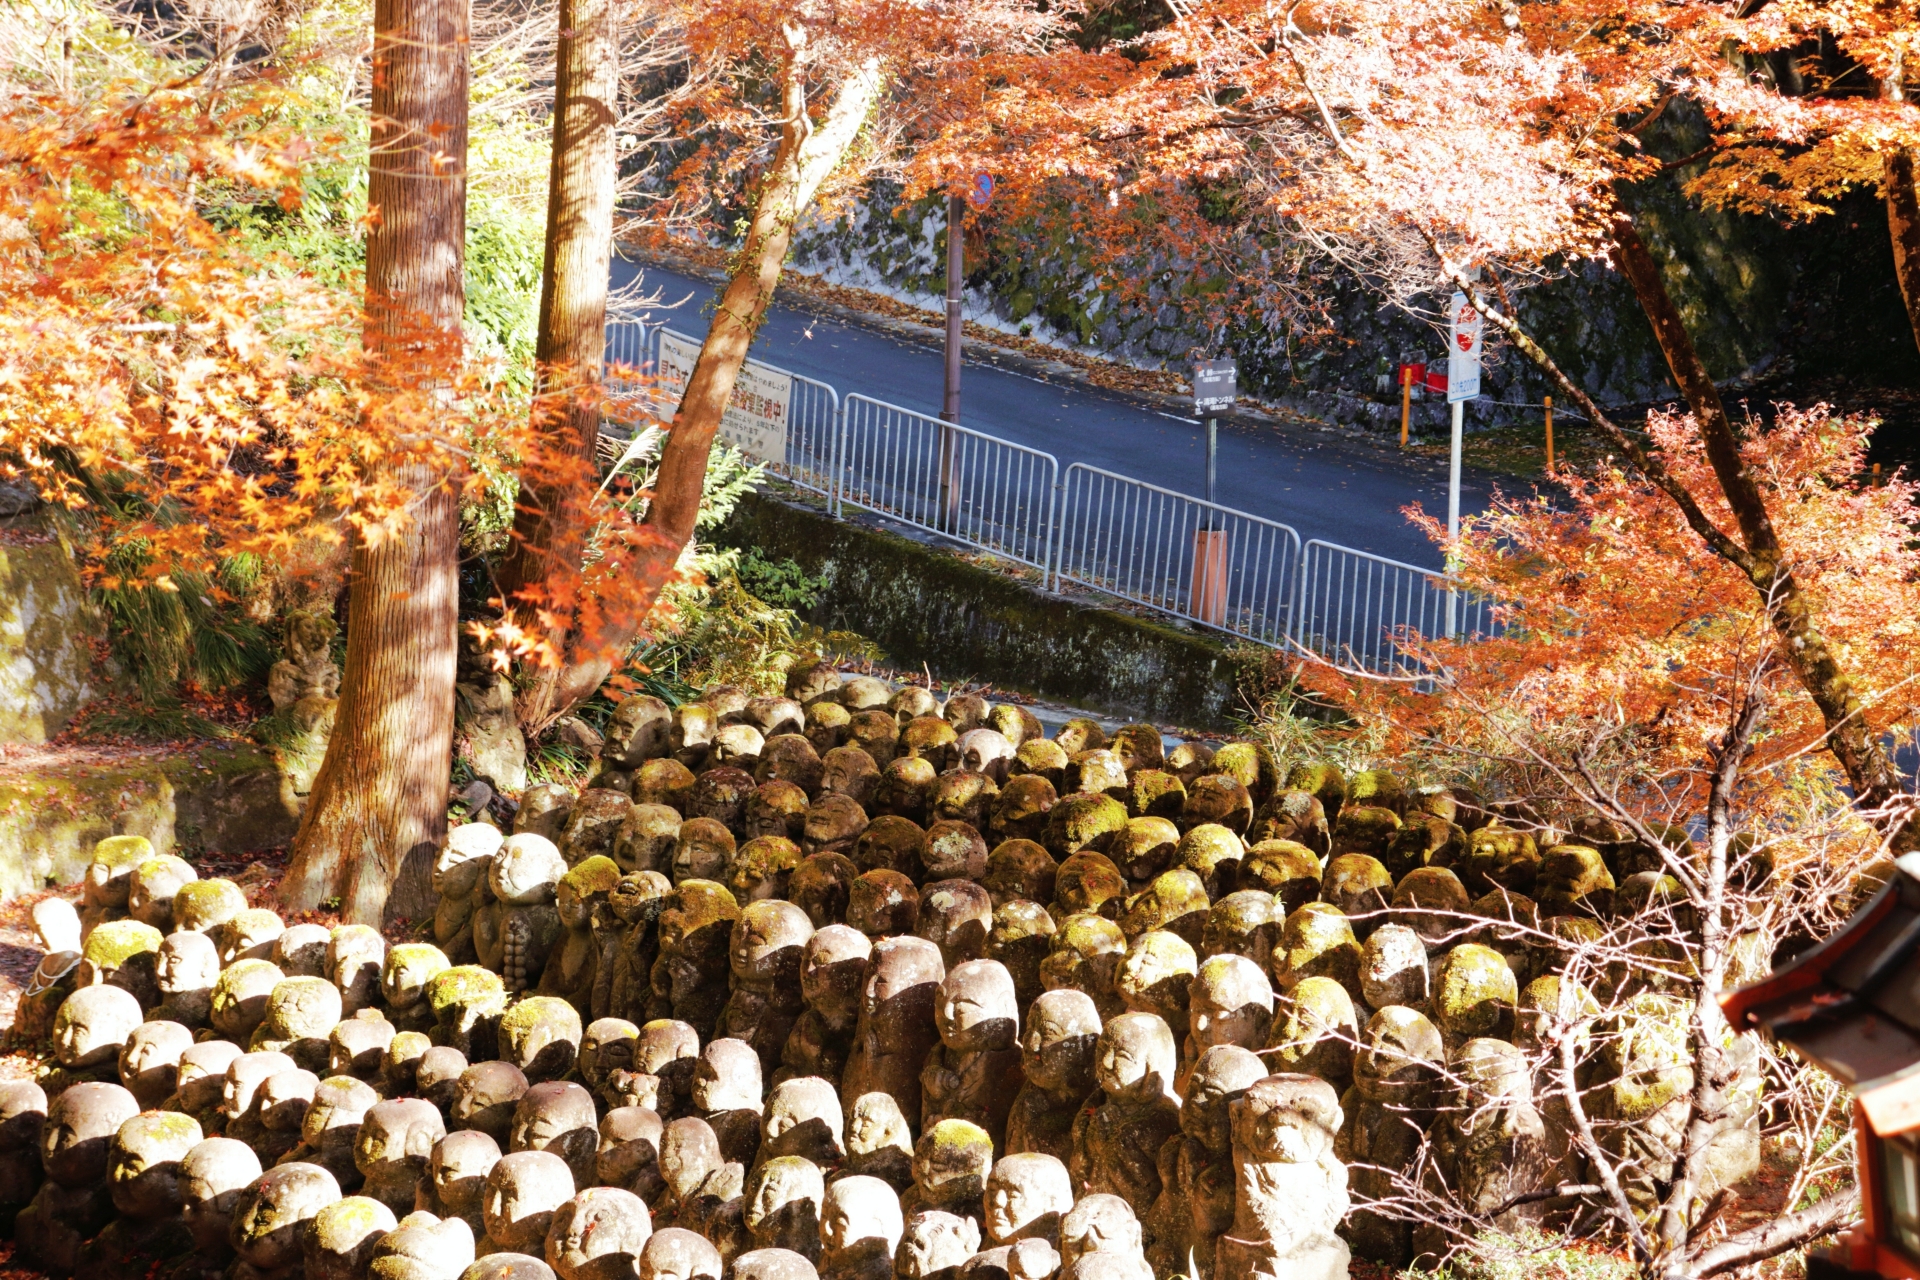 Otagi Nenbutsuji Statues in Autumn